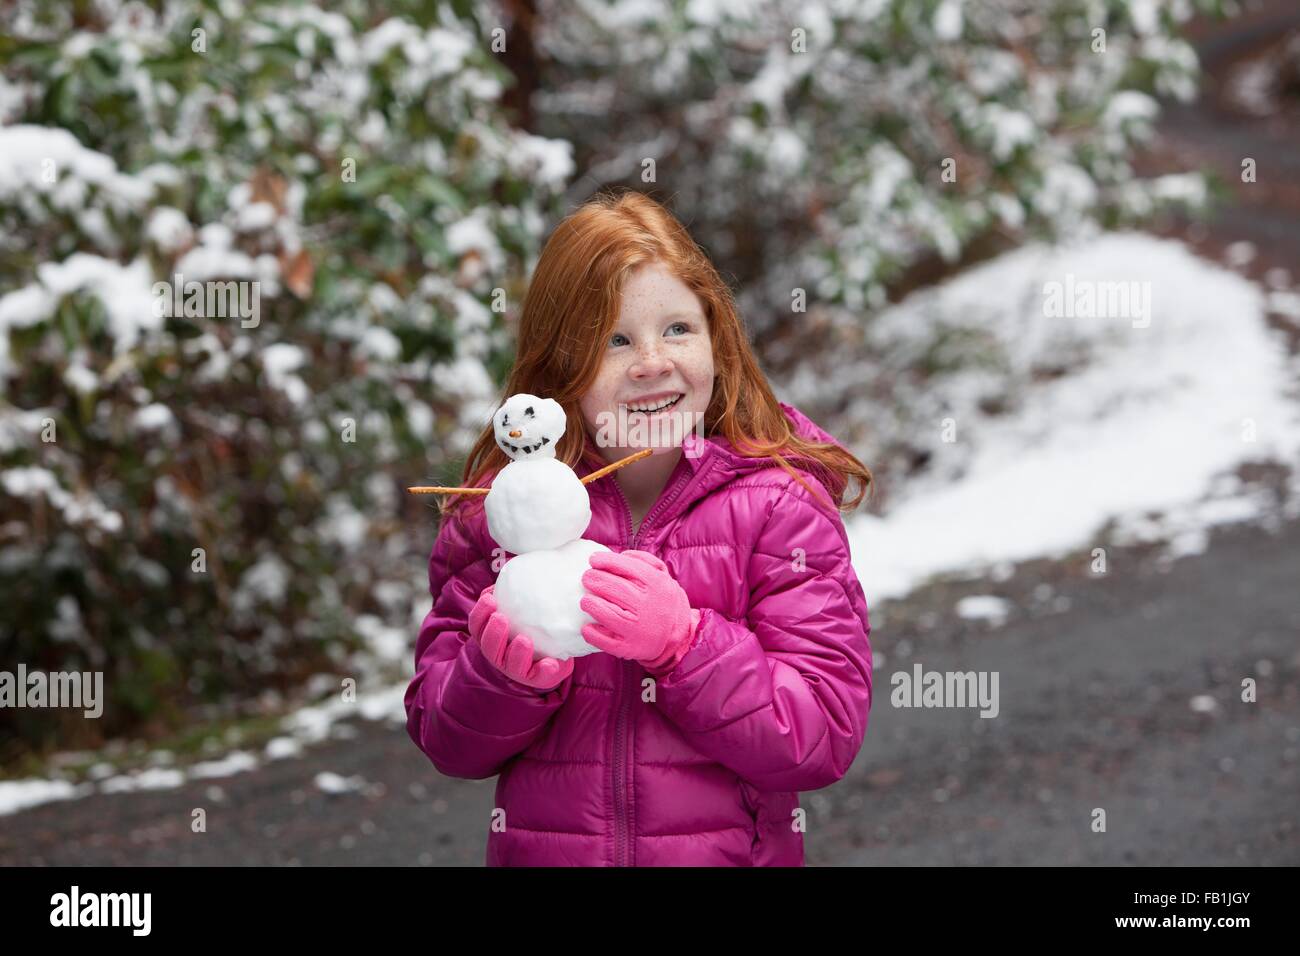 Rote behaarte Mädchen vor Schnee bedeckt Bäume, rosa Handschuhe und wattierte Jacke hält Schneemann sucht Weg Lächeln Stockfoto